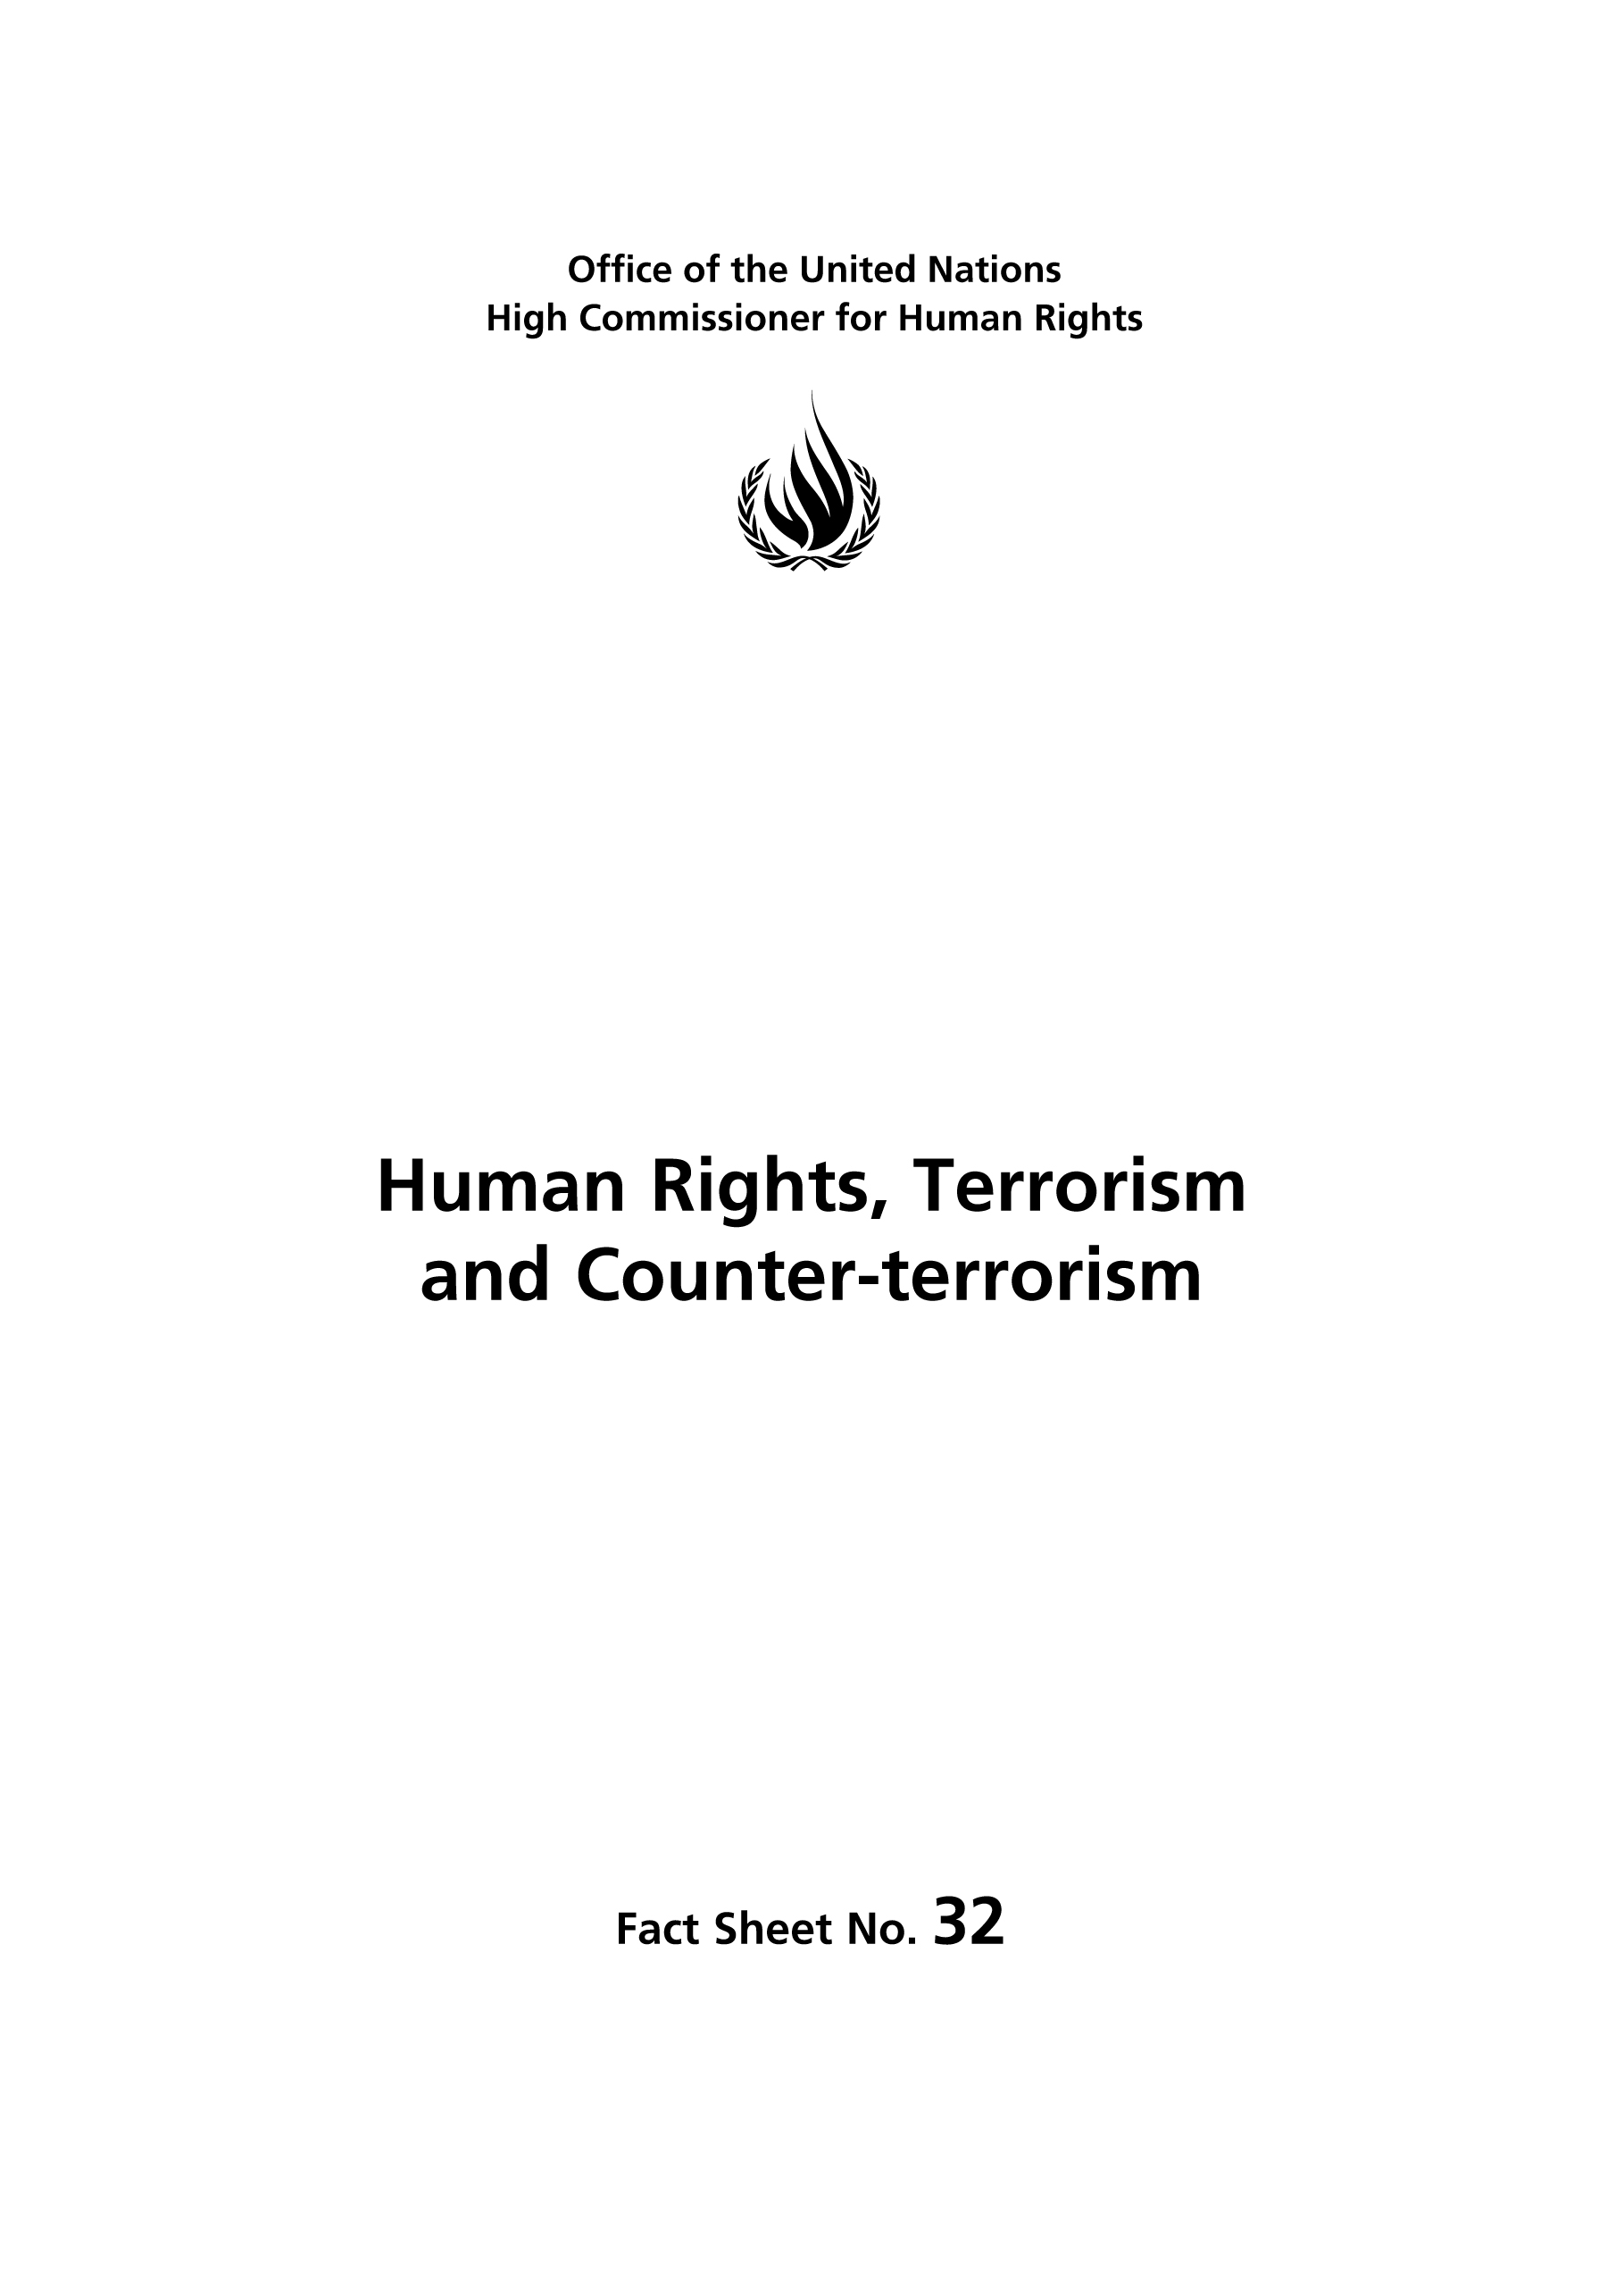 image of Human Rights Fact Sheet No. 32, Rev. 1